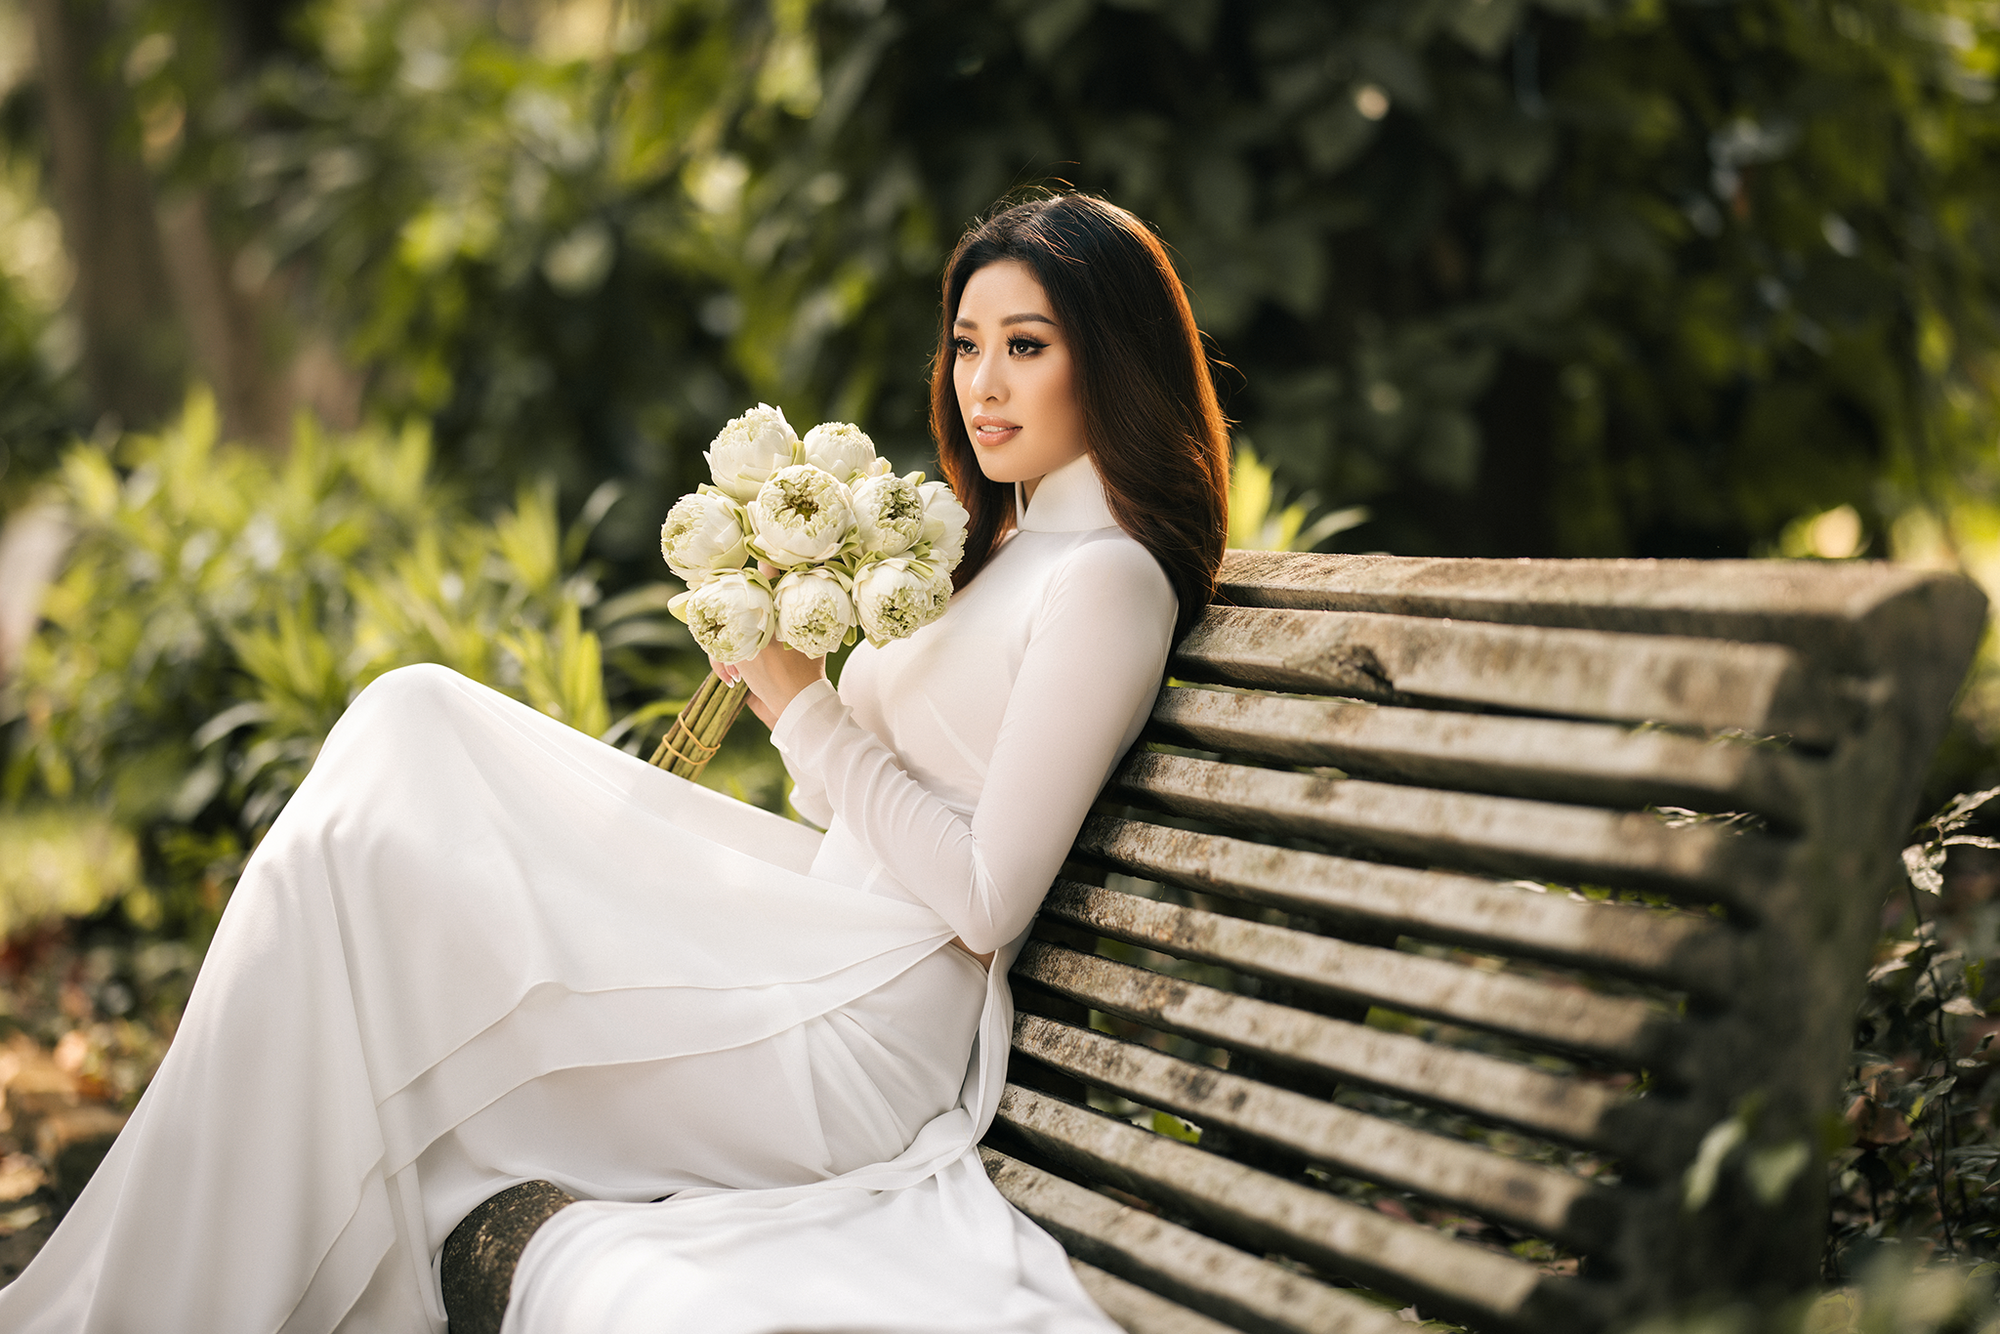 Hoa hậu Khánh Vân mặc áo dài trắng đẹp như mỹ nhân trong tranh - Ảnh 3.